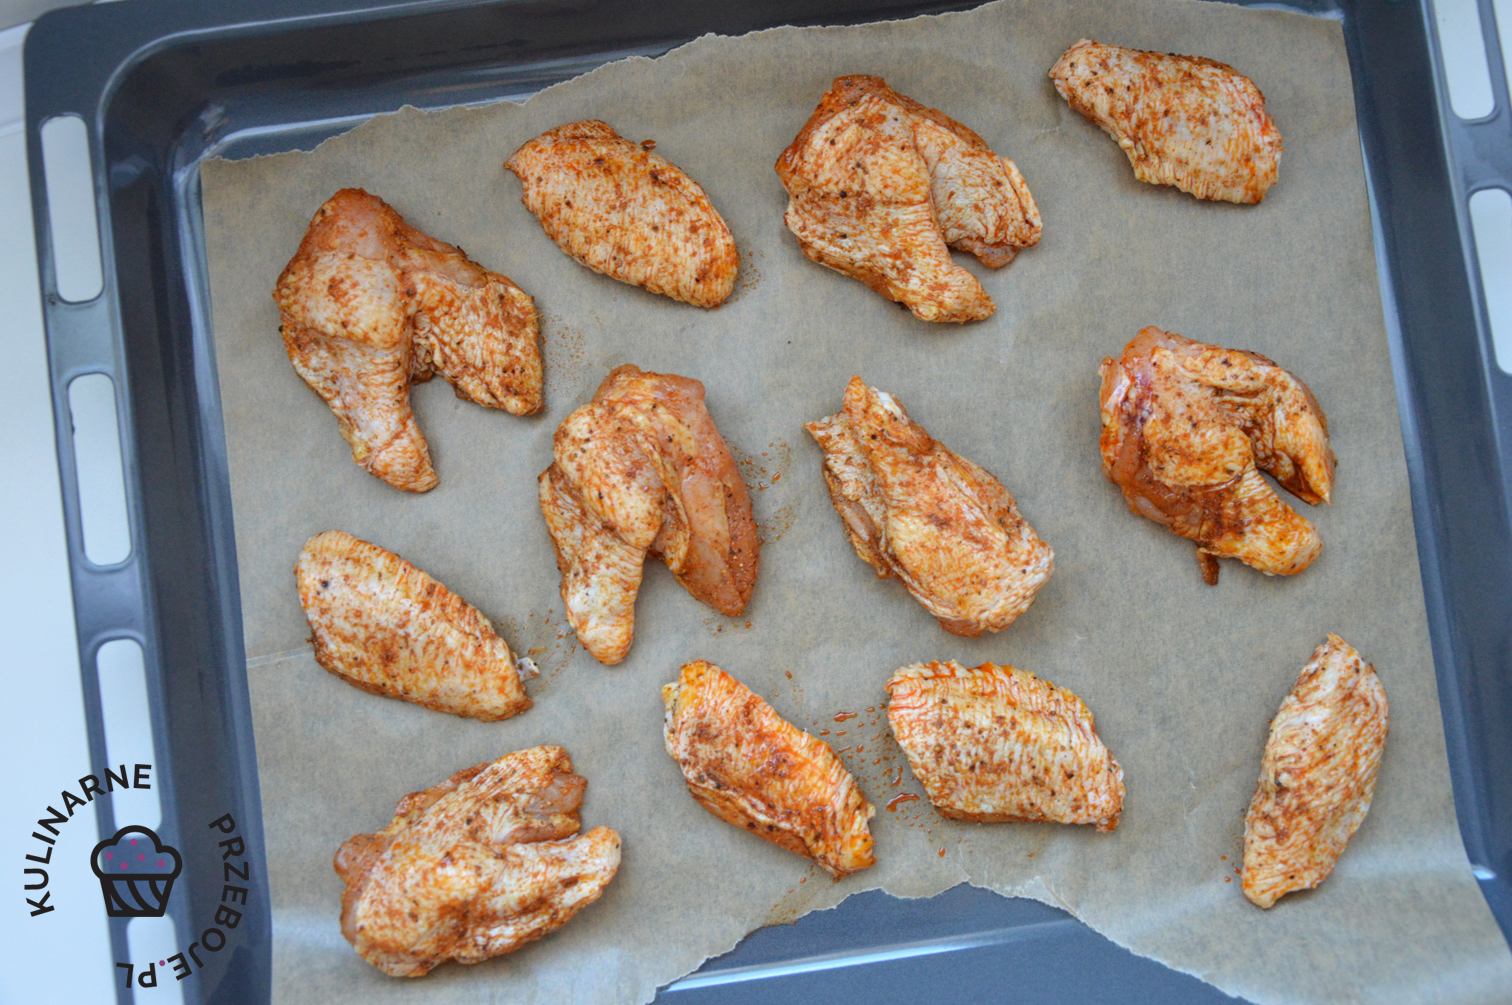 Marynowane skrzydełka z kurczaka przed pieczeniem w piekarniku